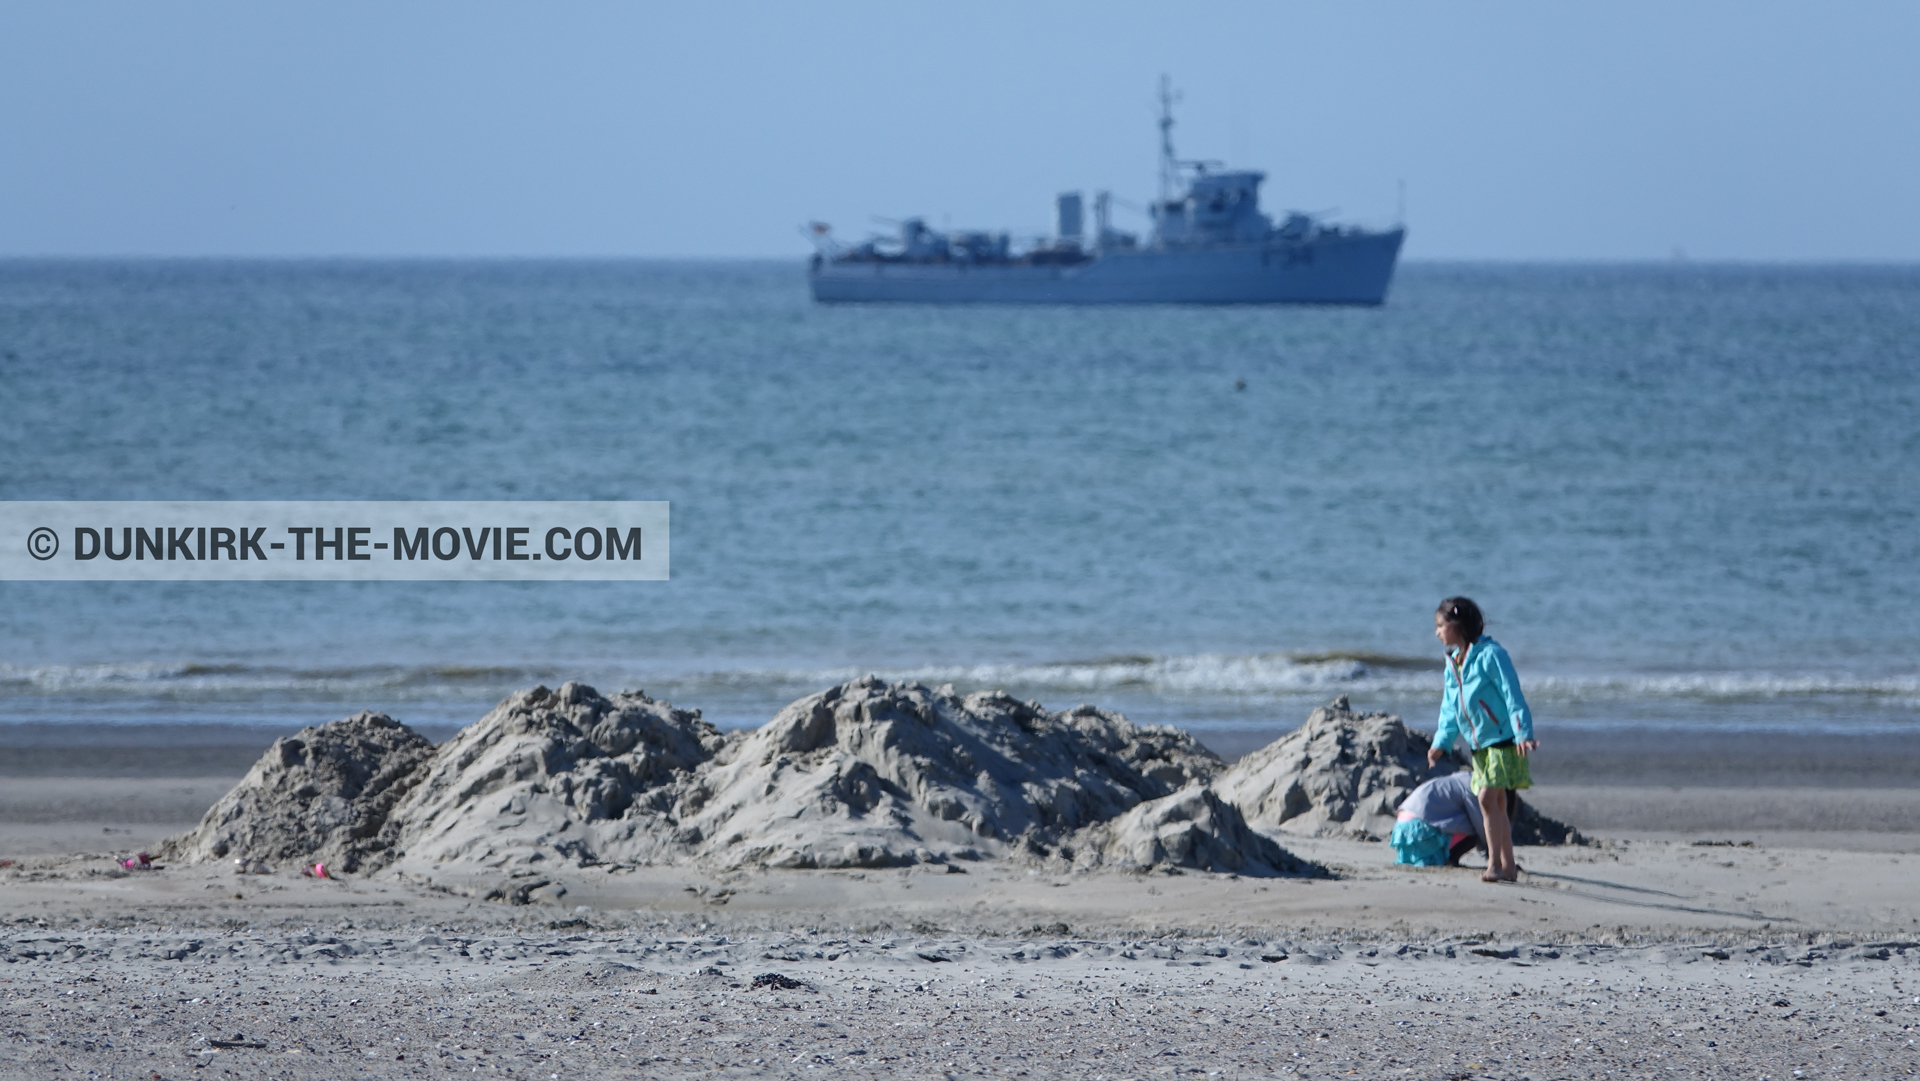 Photo avec ciel bleu, F34 - Hr.Ms. Sittard, mer calme, plage,  des dessous du Film Dunkerque de Nolan